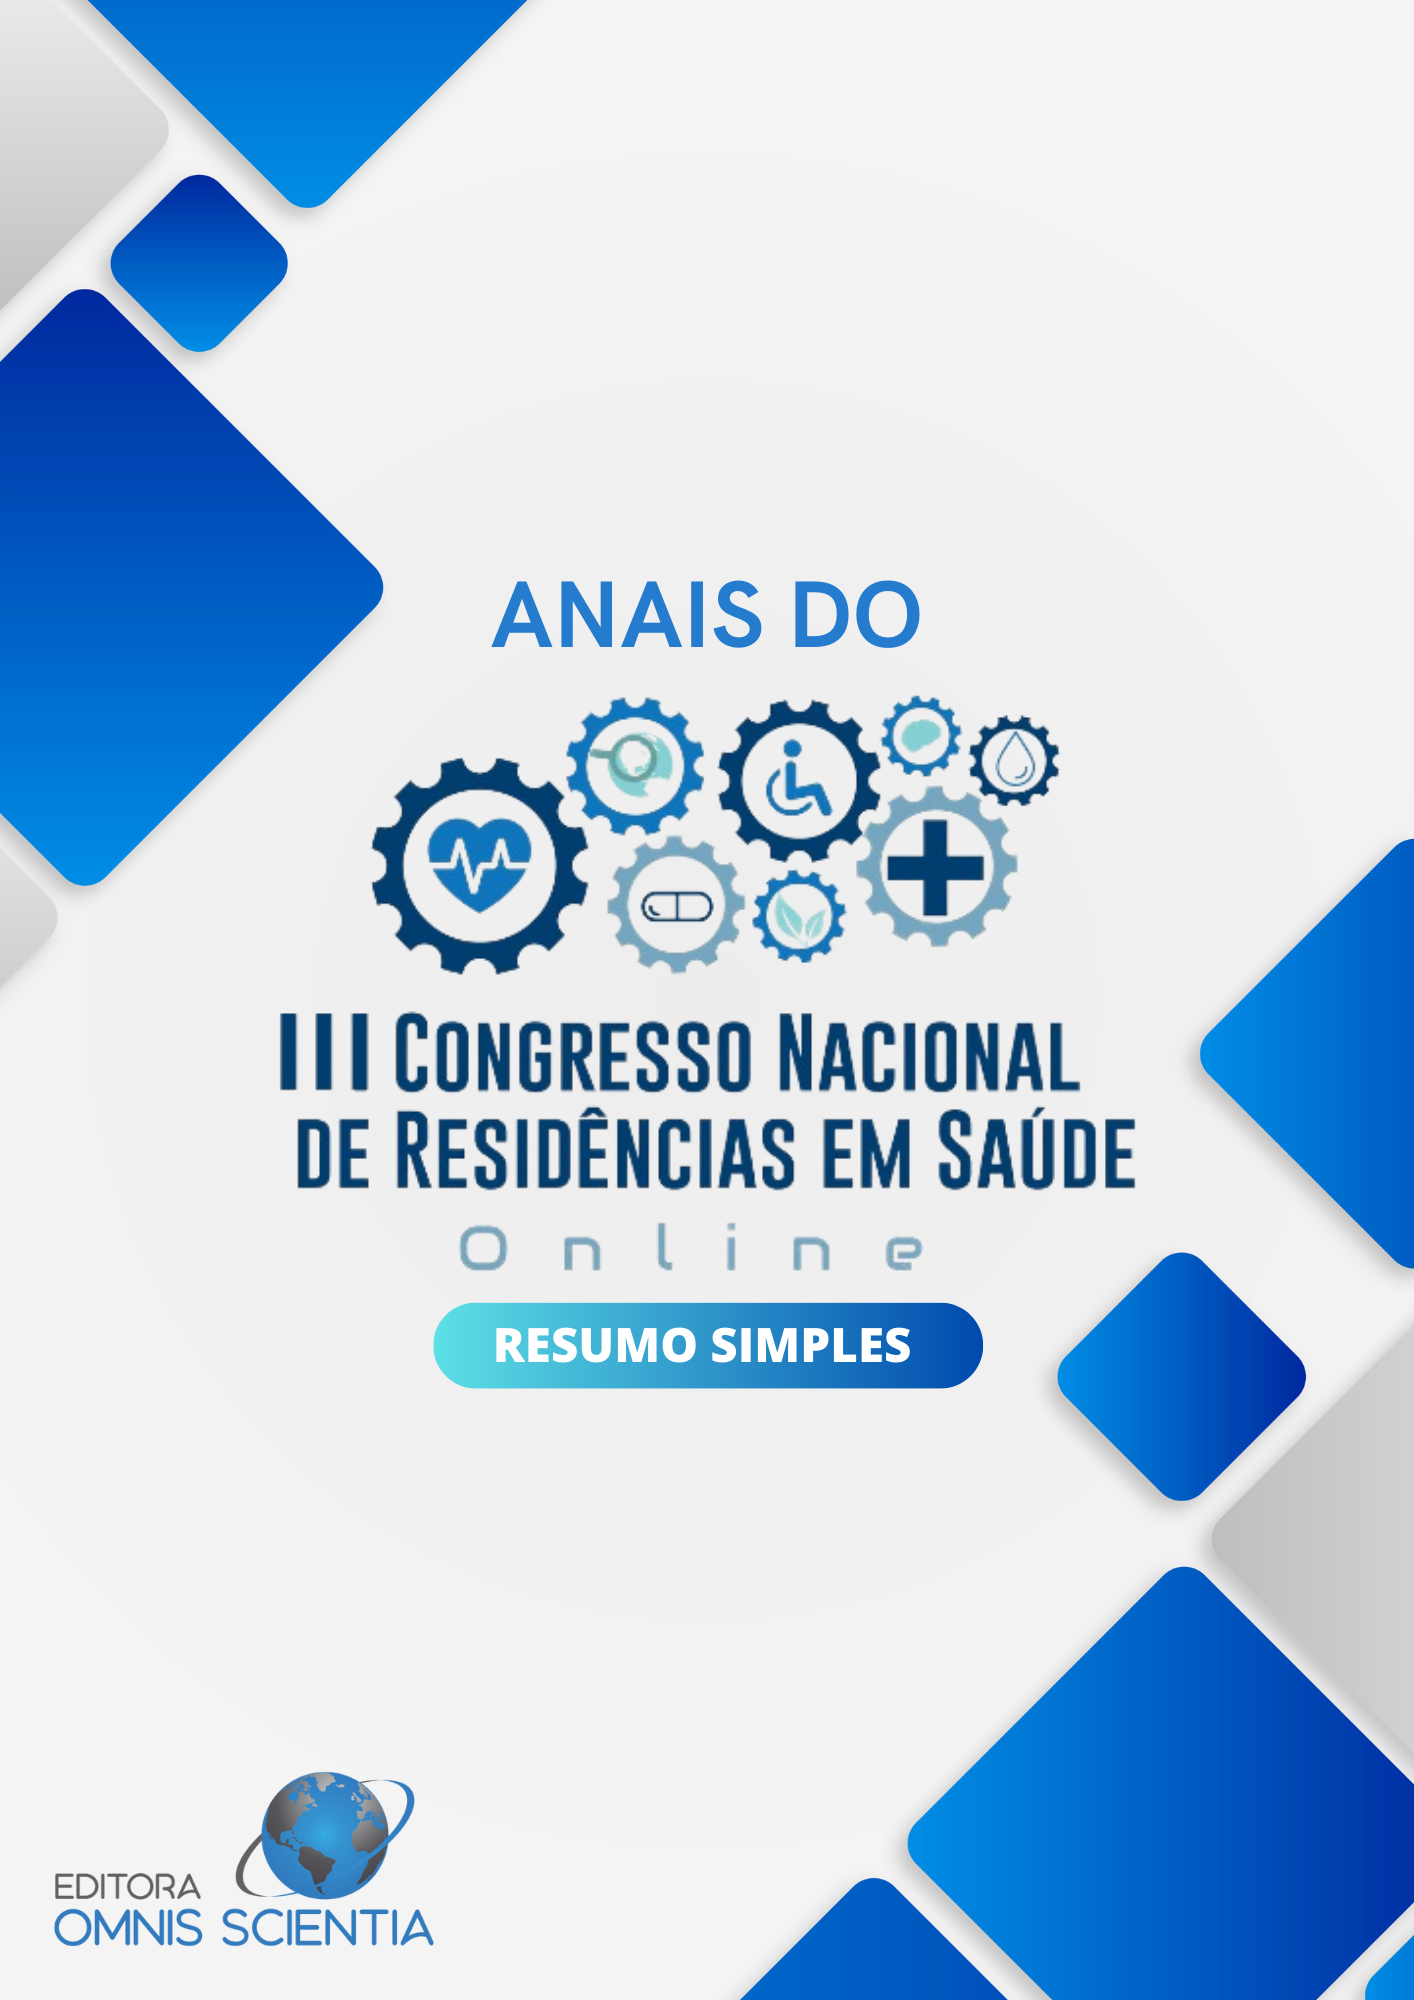 ANAIS DO III CONGRESSO NACIONAL DE RESIDÊNCIAS EM SAÚDE (ON-LINE) – RESUMO SIMPLES